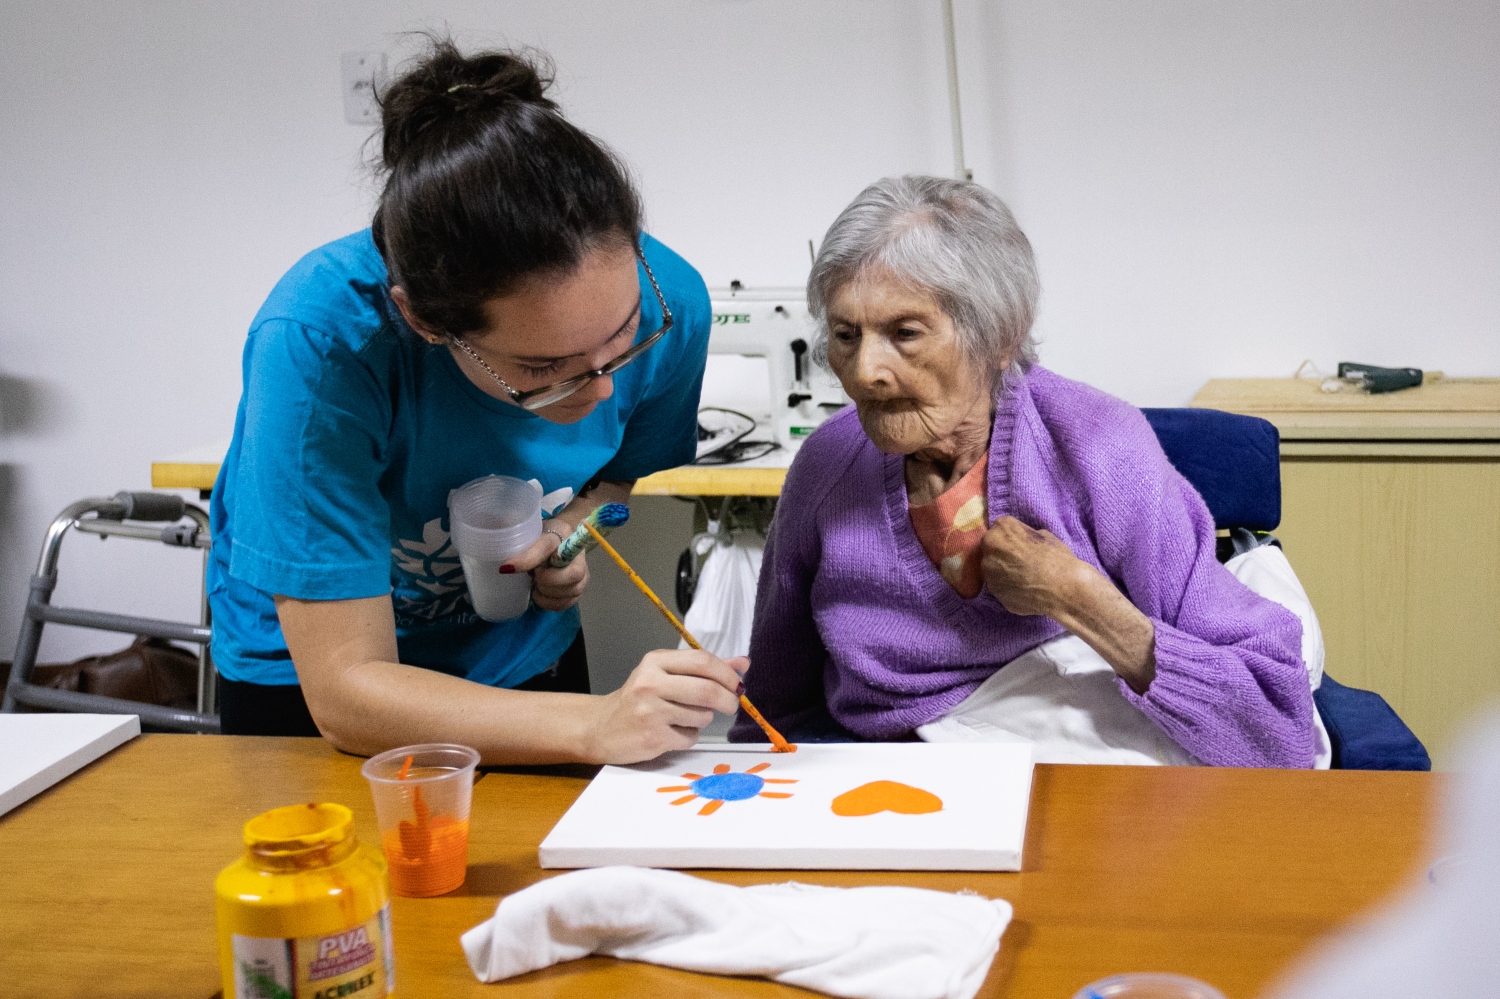 Fotografia de uma voluntária com uma senhora idosa. A voluntária ajuda a senhora a pintar um quadro colorido.